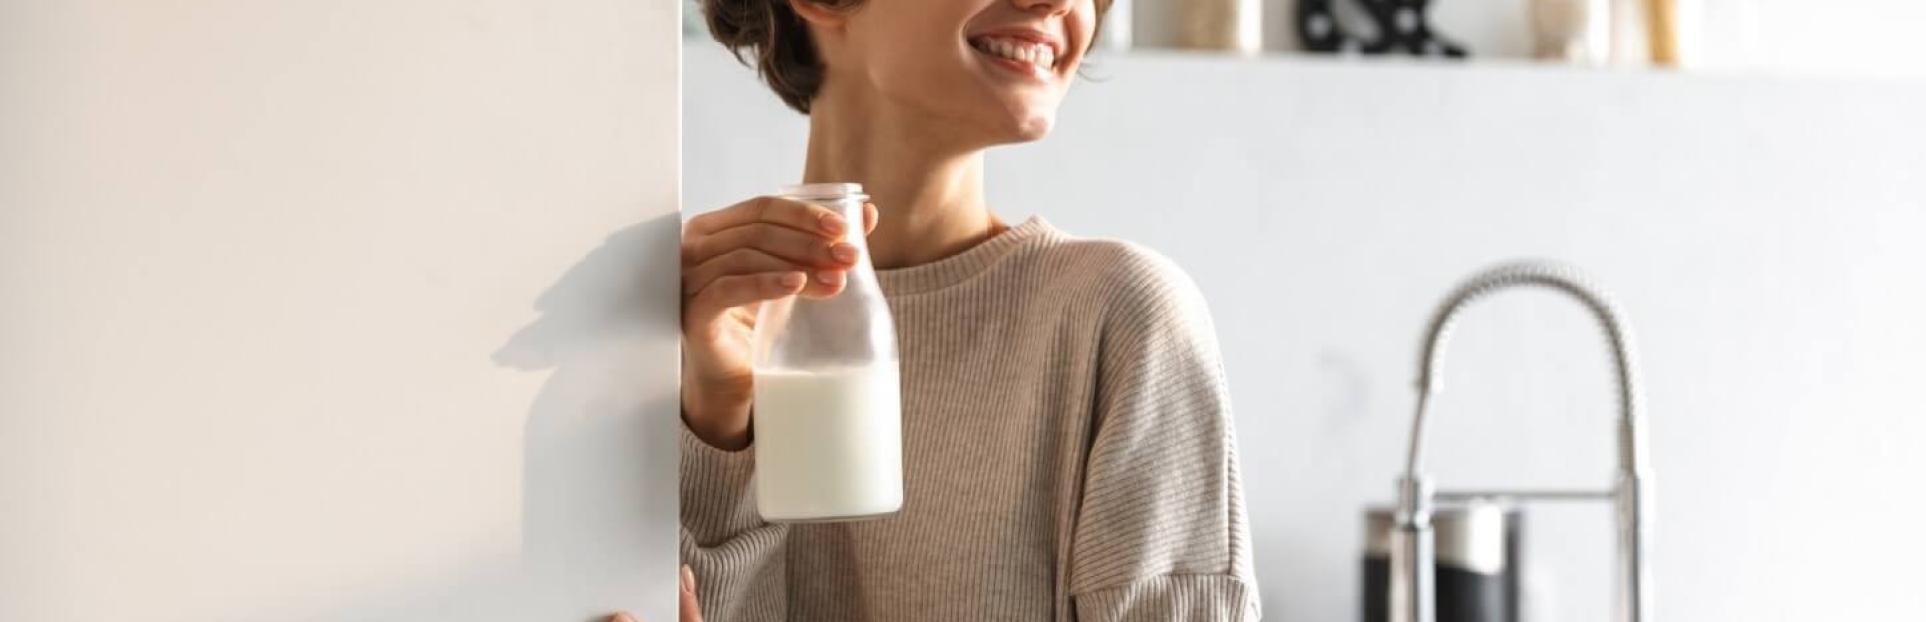 girl holding milk